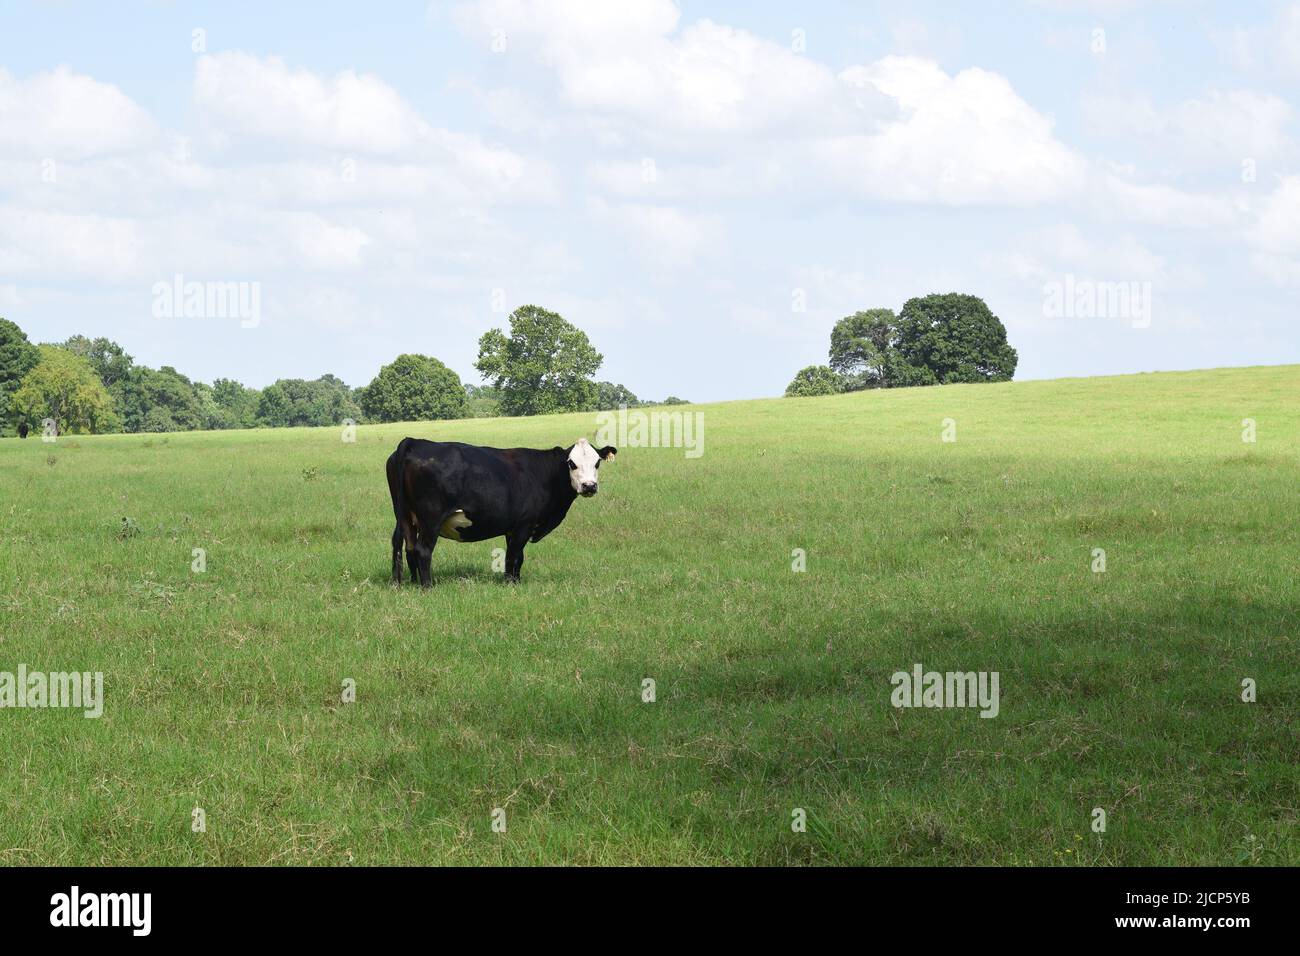 Eine weiße, schwarze Kuh, die auf einem Grasfeld steht und nach rechts zeigt, unter einem teilweise bewölkten Himmel Stockfoto